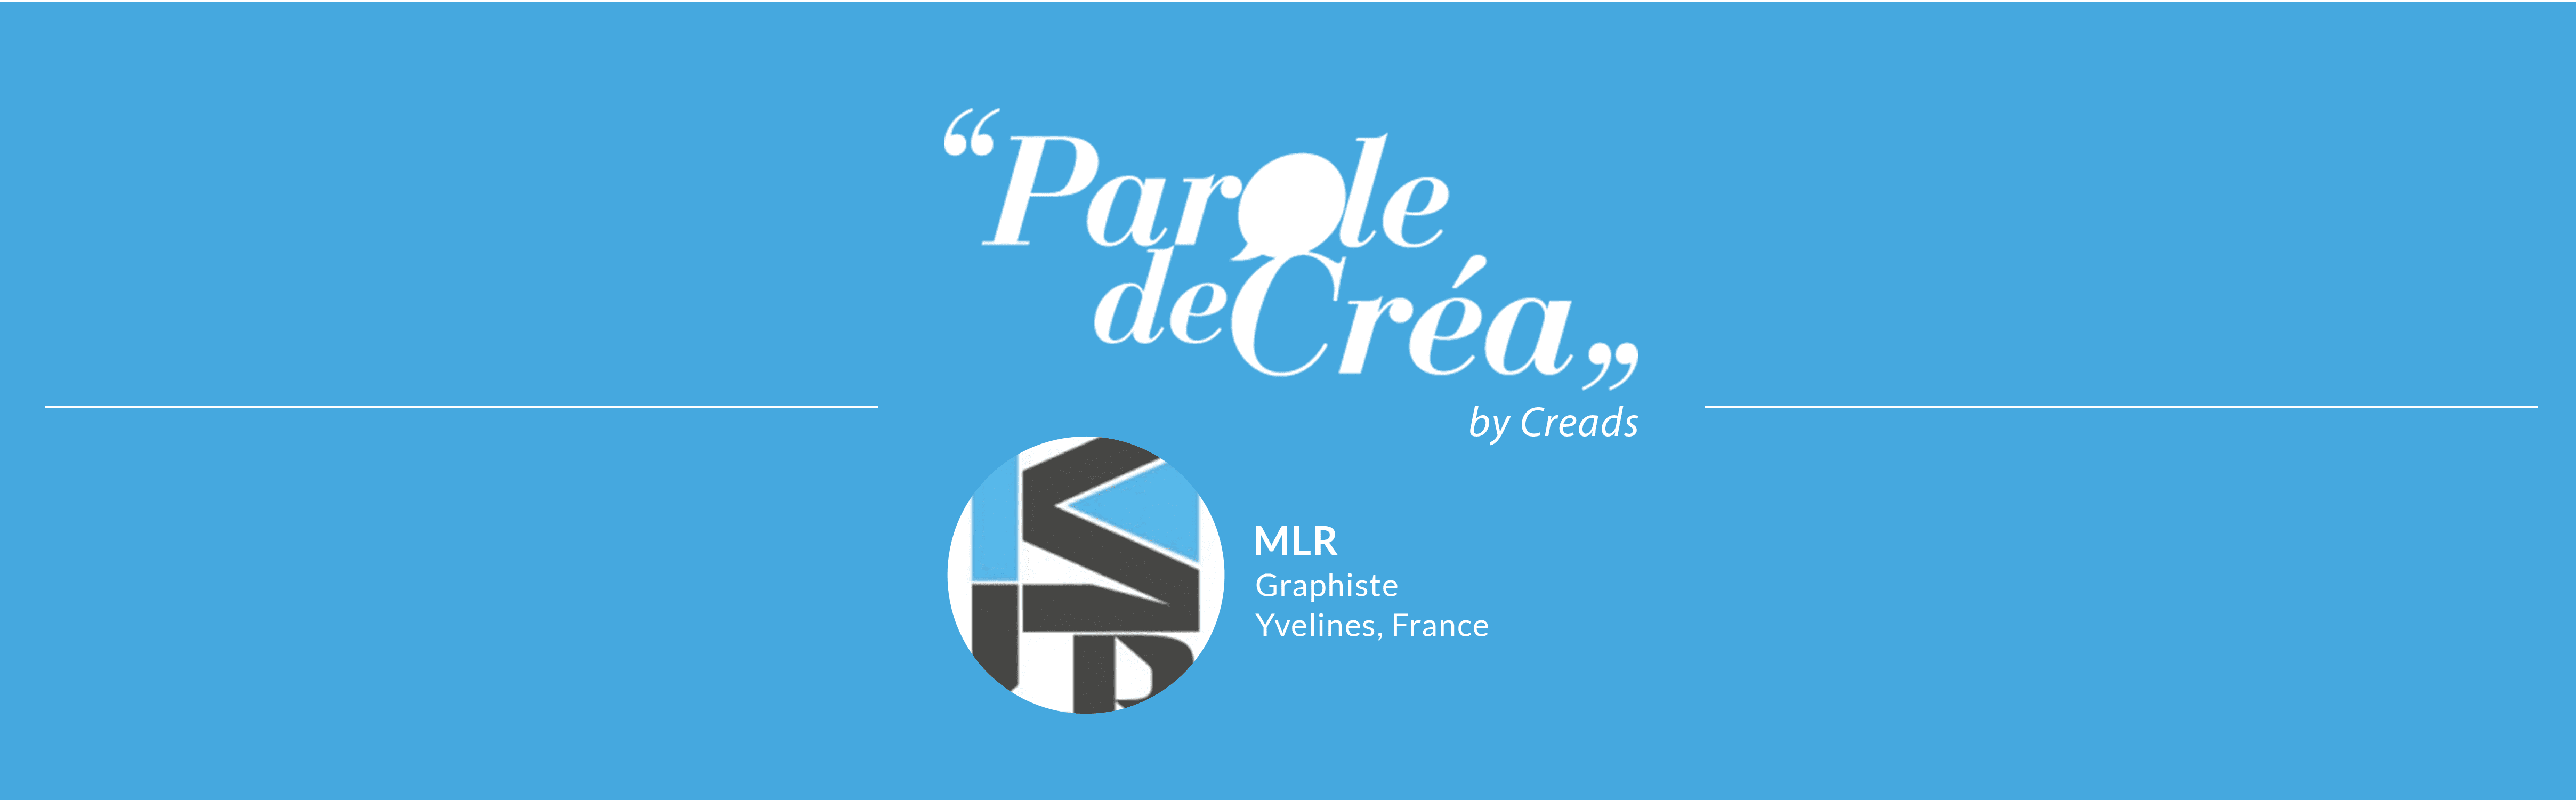 Paroles de Créa – Découvrez l’interview de @MLR !